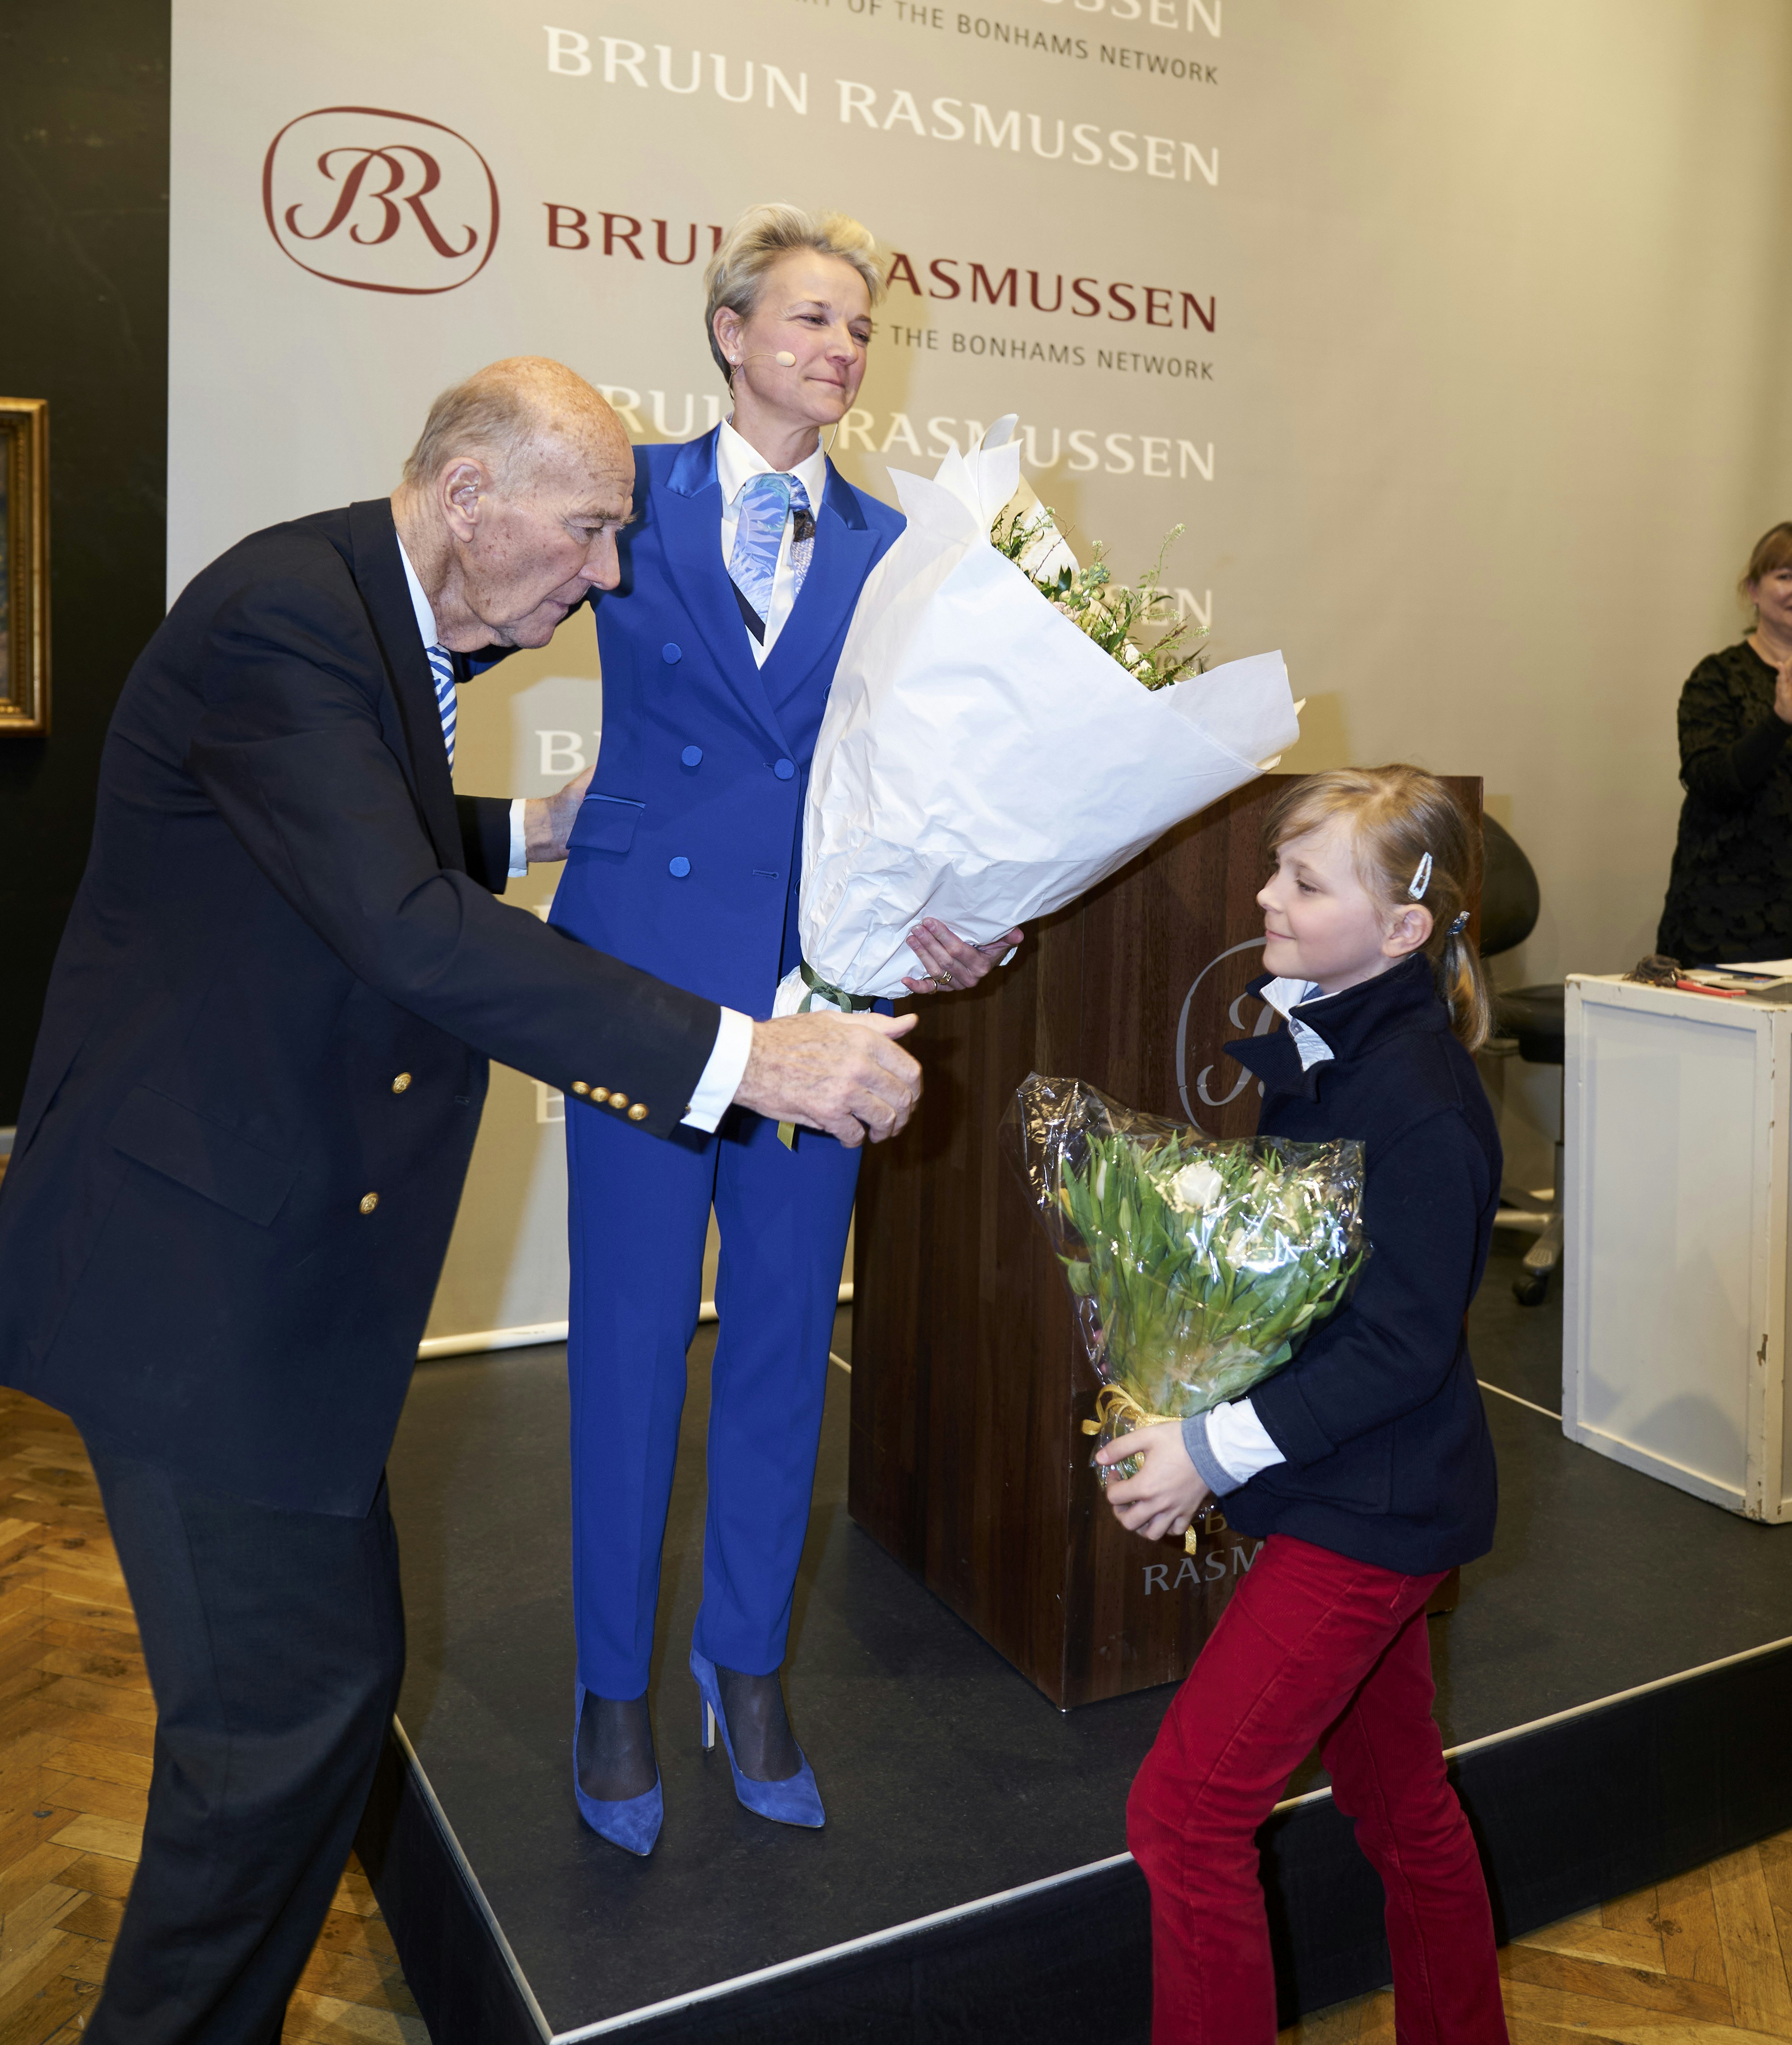 Ved mors side: Bruun Rasmussen fik flotte blomster af datteren | BILLED-BLADET